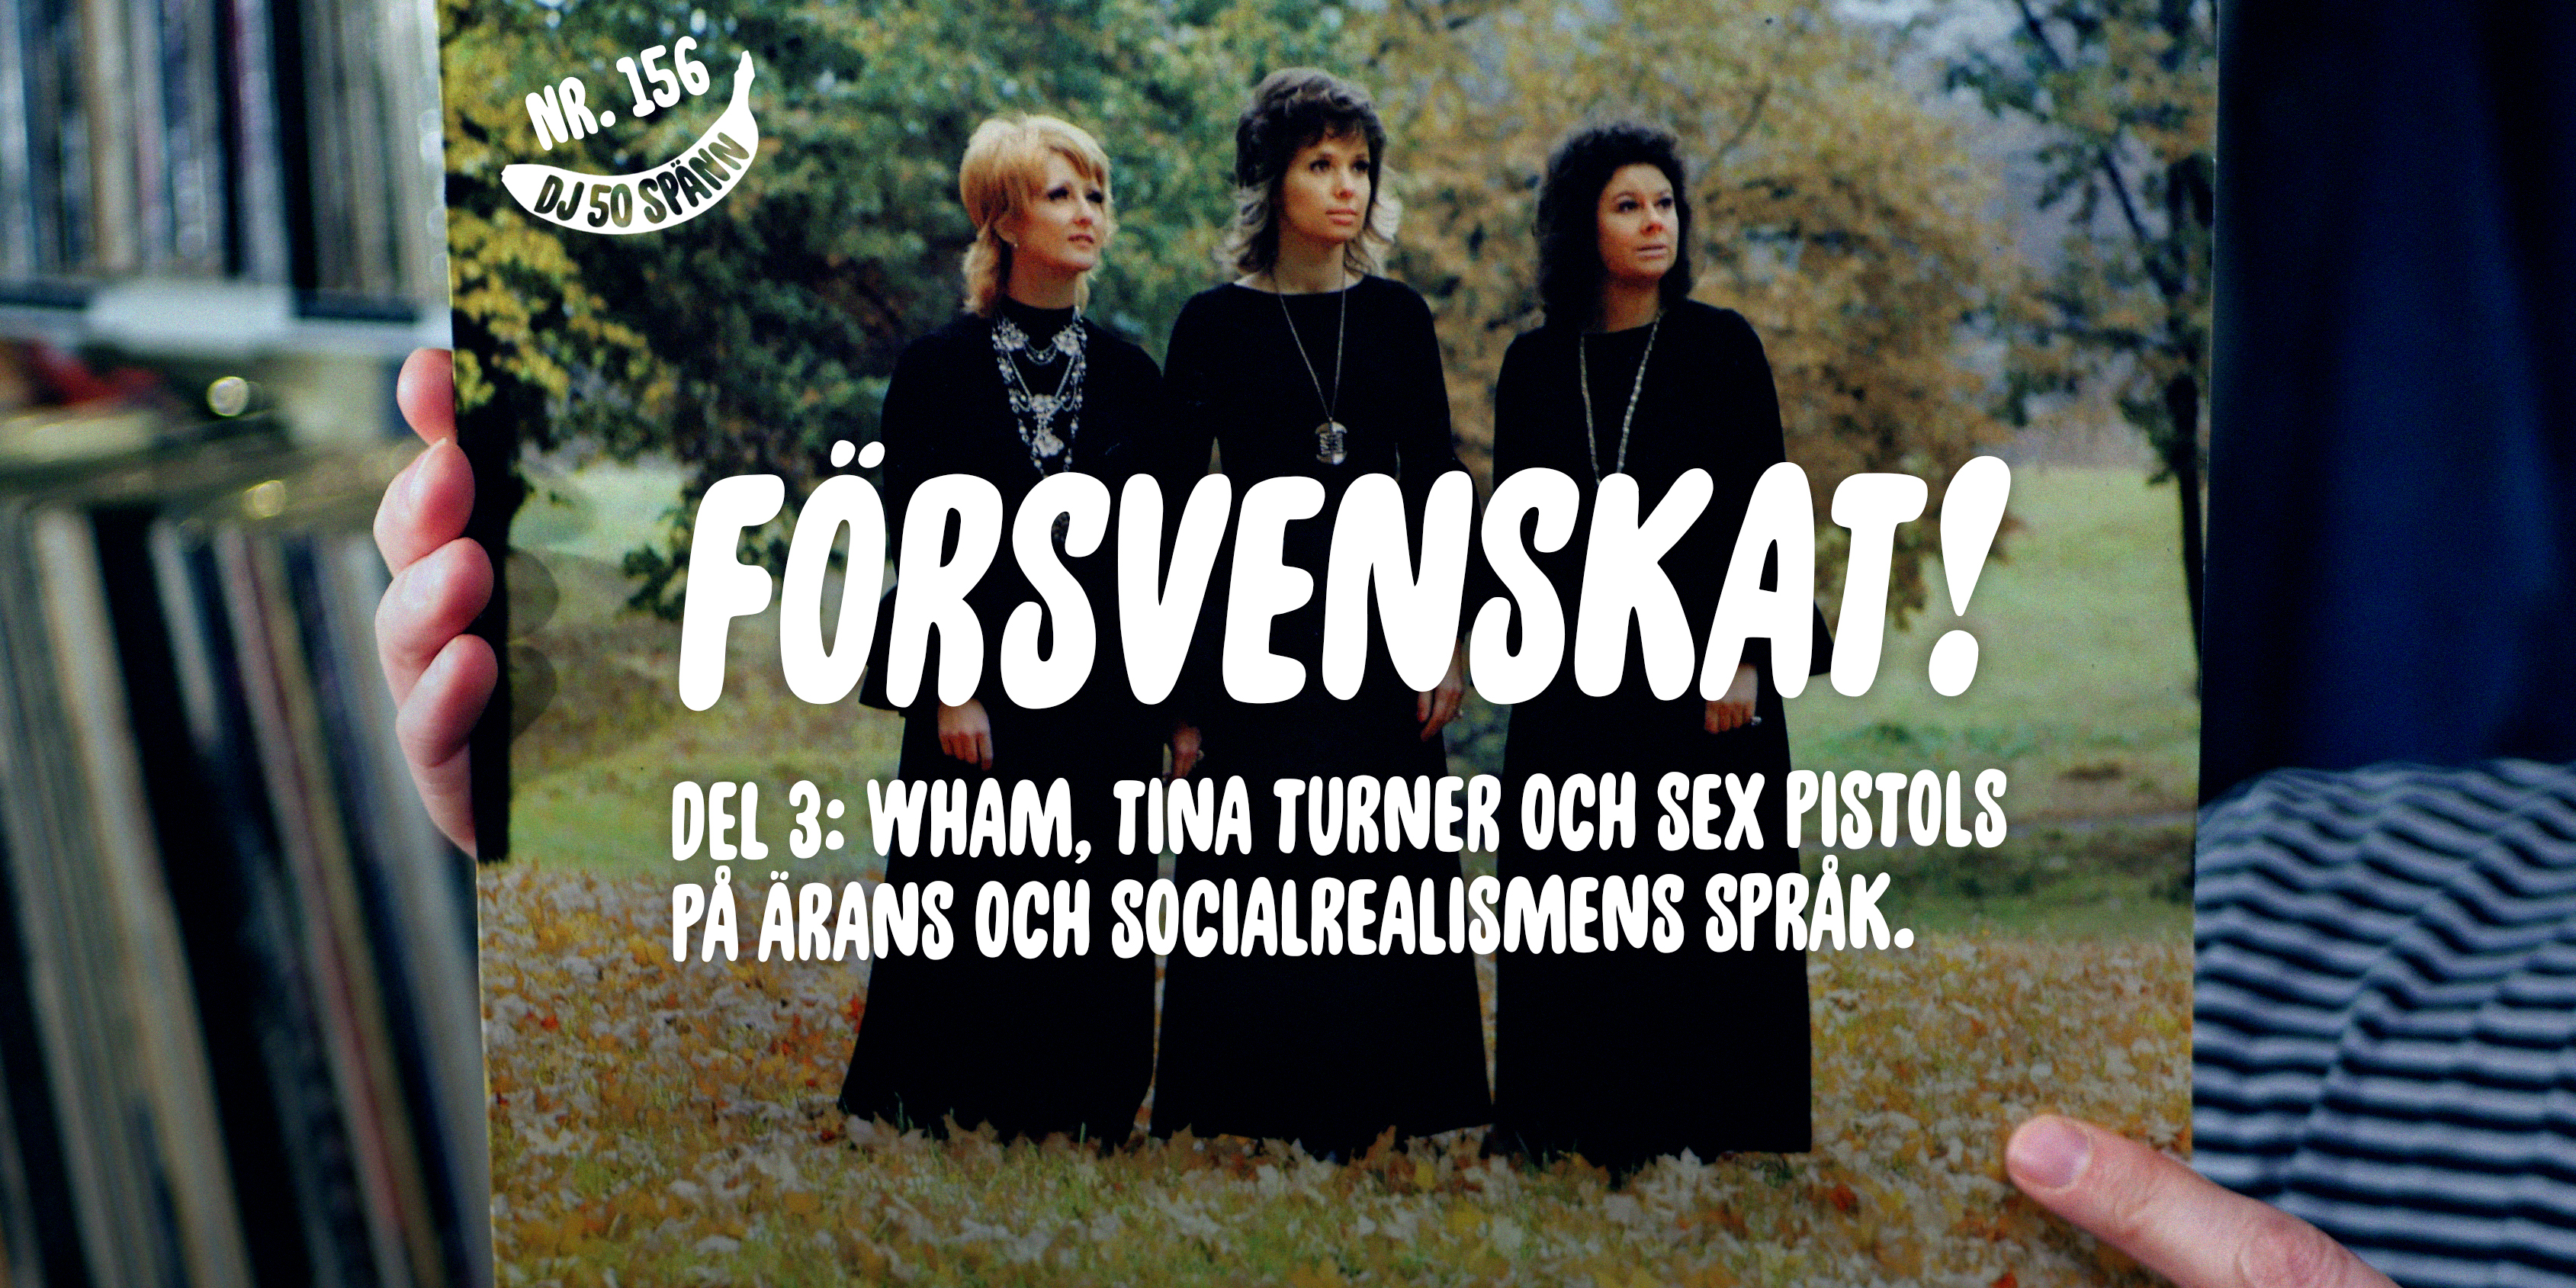 DJ50:-nr 156: Försvenskat! Del 3 – Wham, Tina Turner och Sex Pistols på ärans och socialrealismens språk.